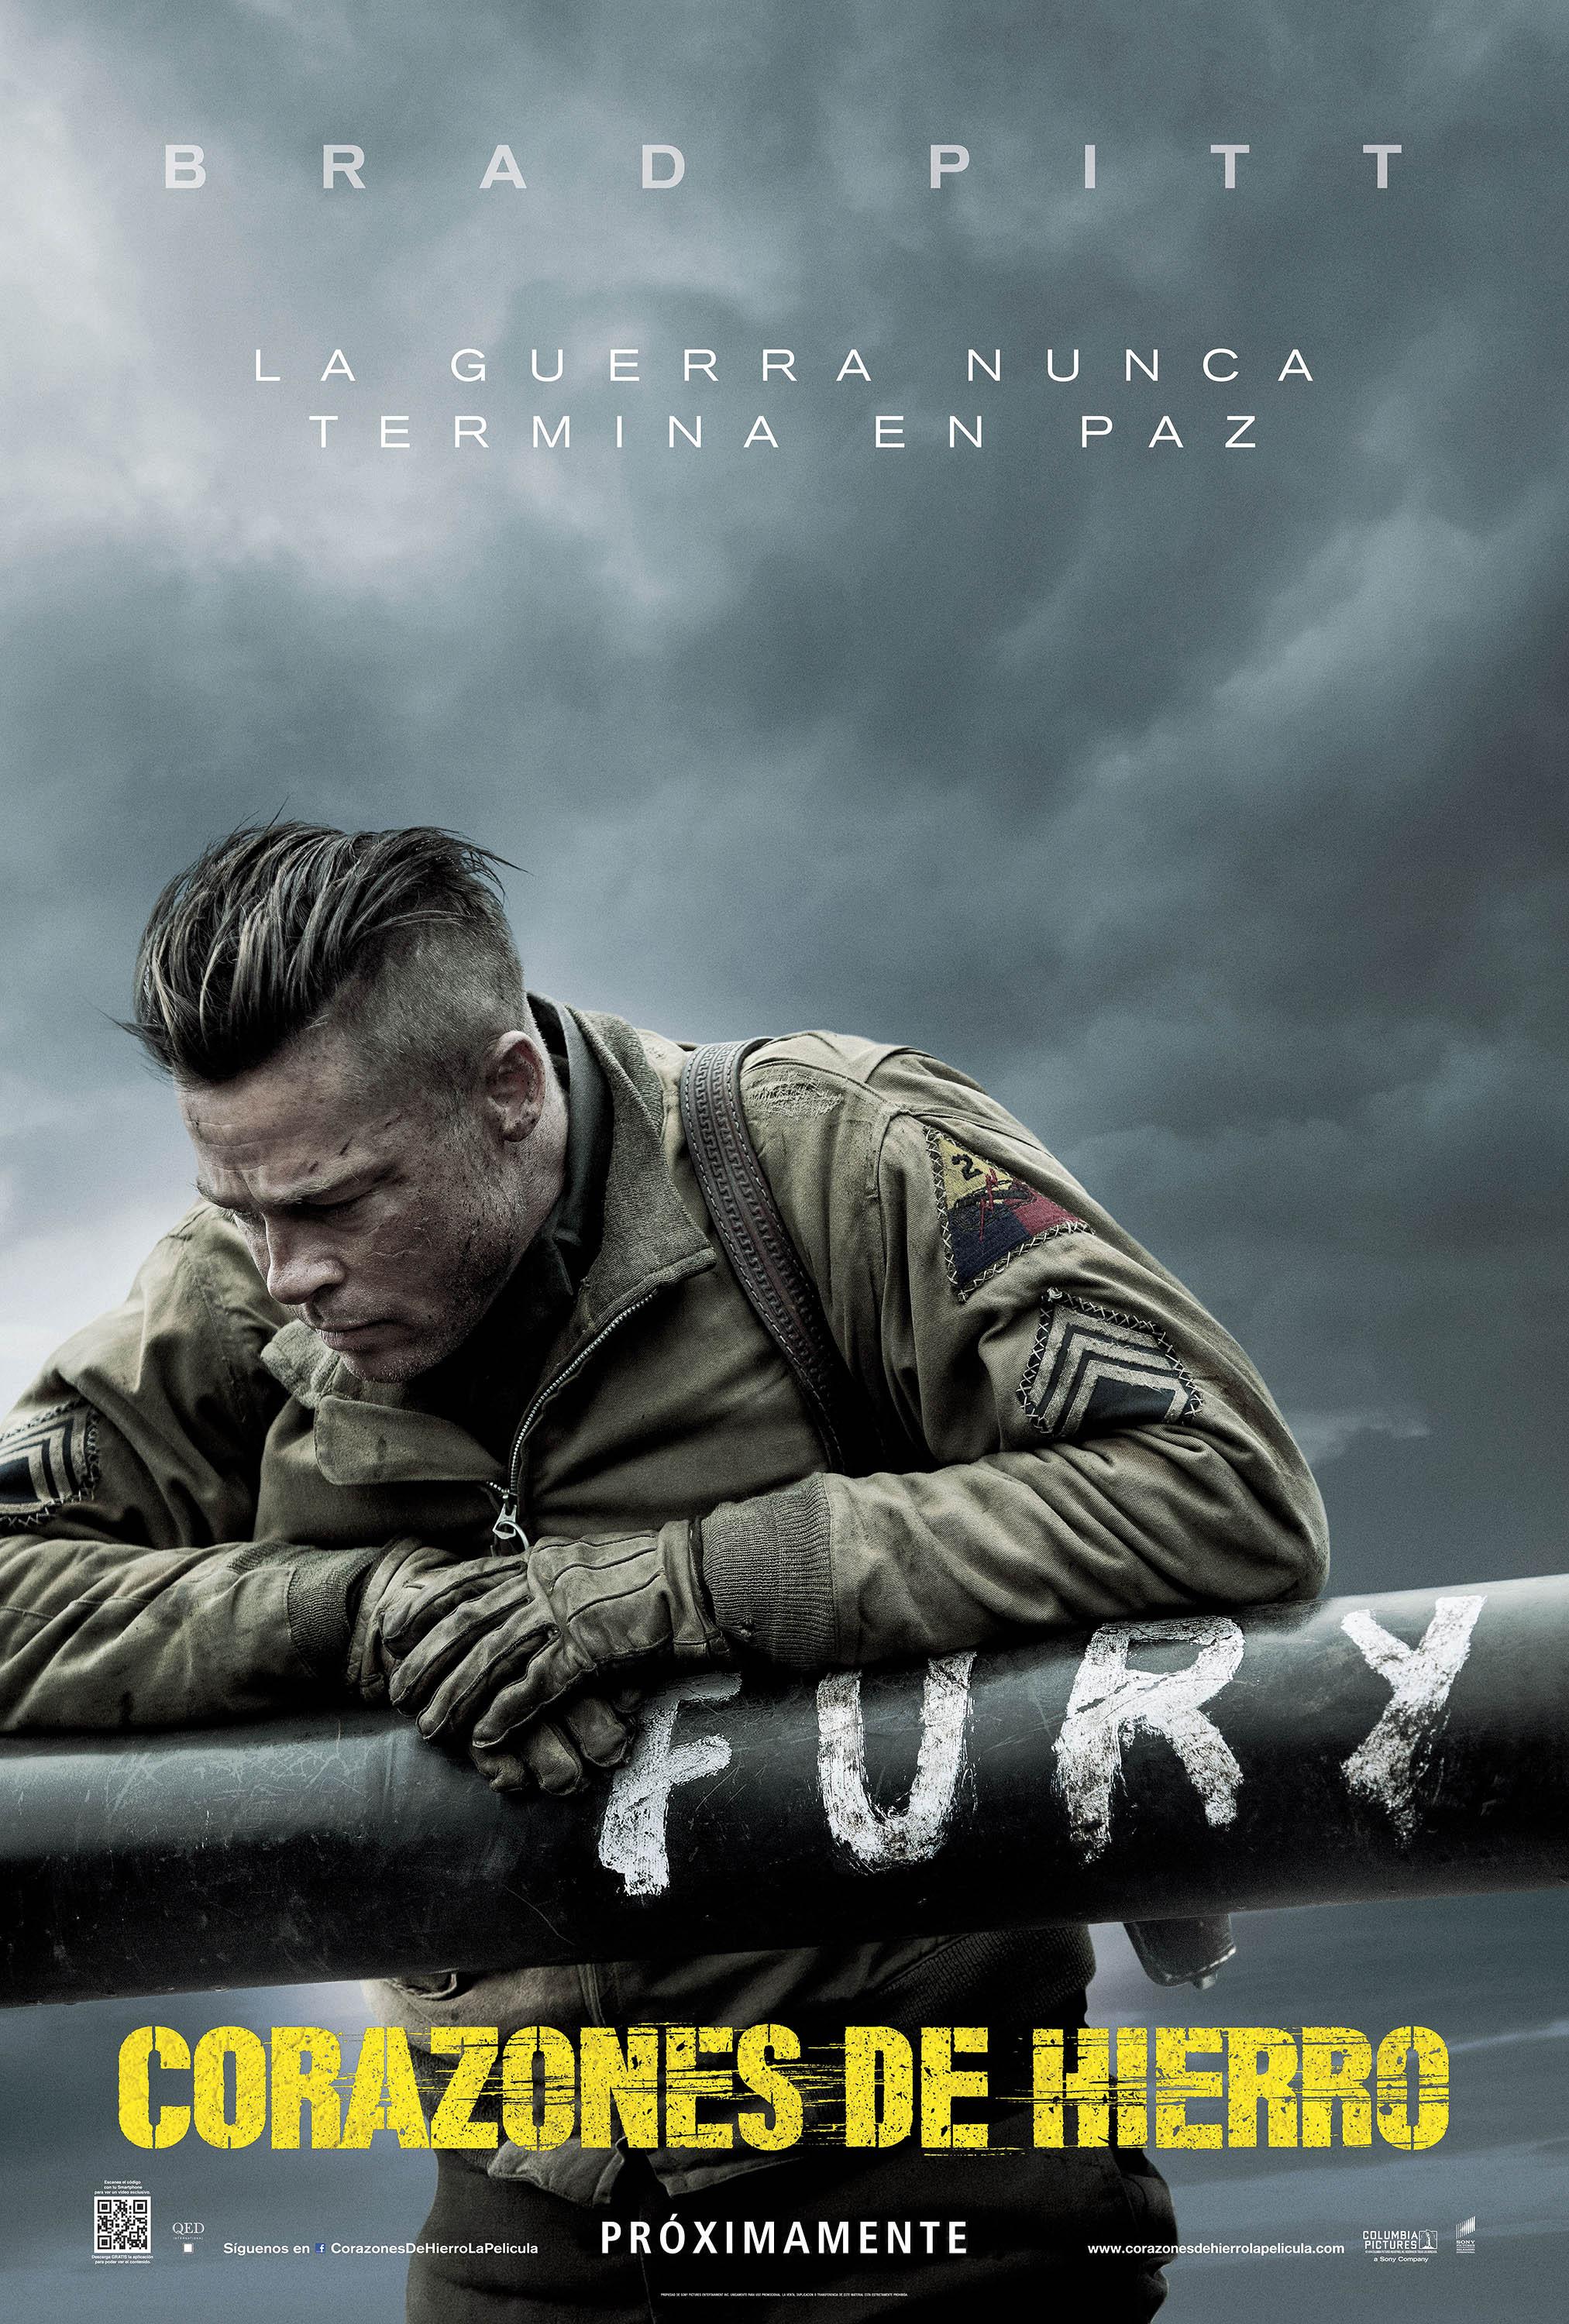 Постер фильма Ярость | Fury